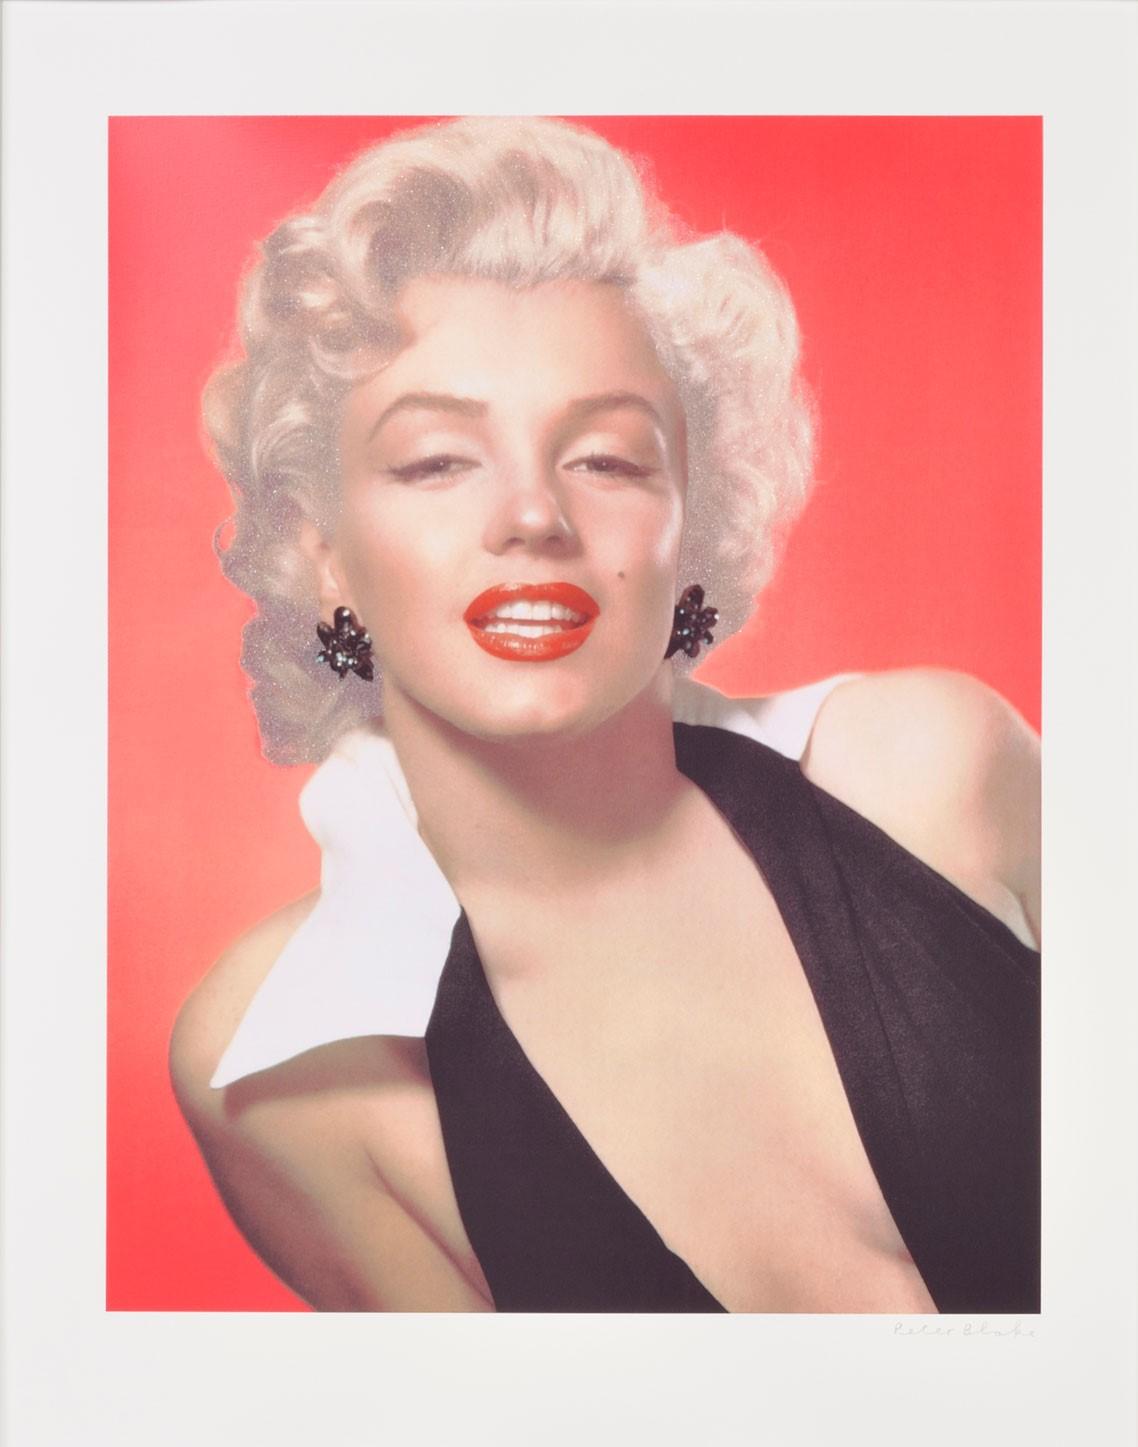 Peter Blake Portrait Print – Marilyn - Contemporary 21st Century, Siebdruck, Diamantstaub, limitierte Auflage